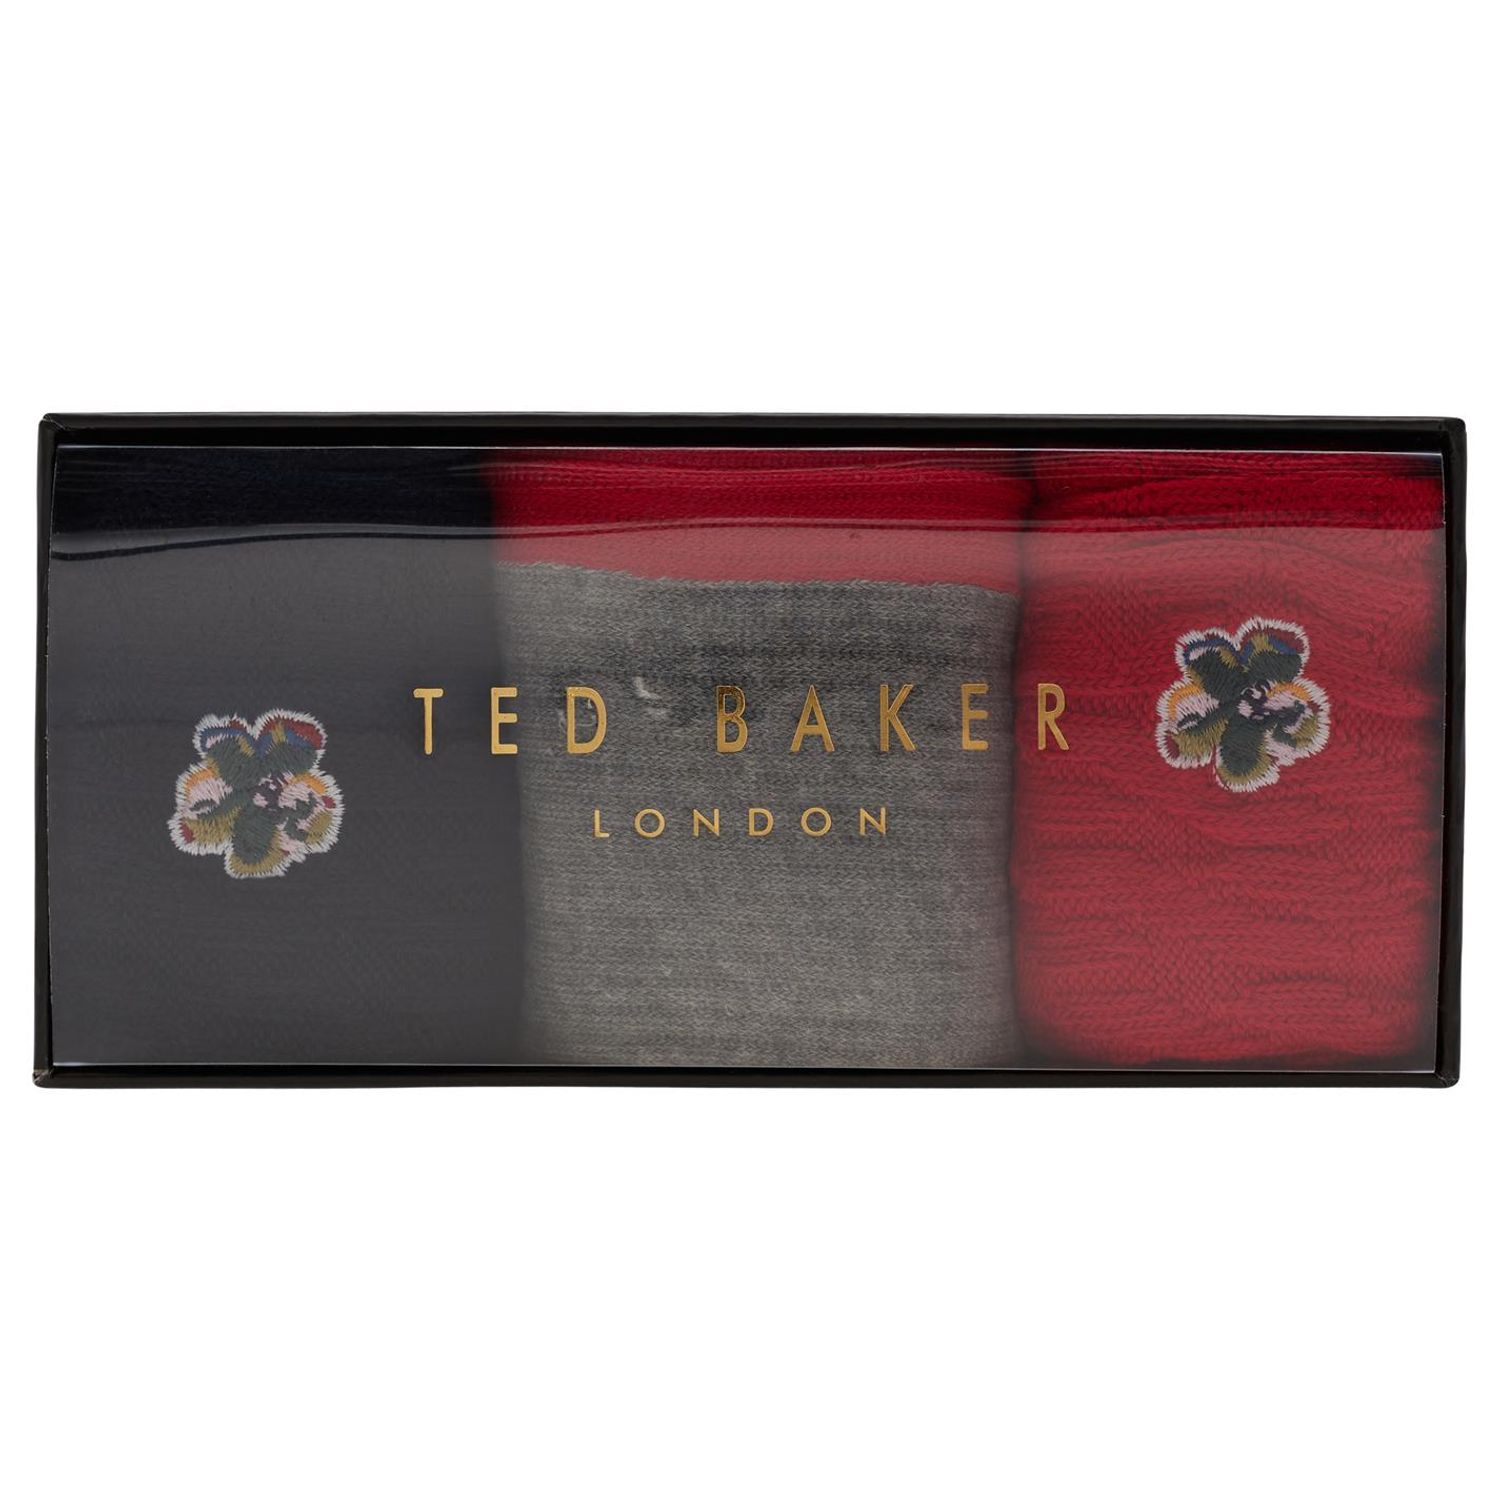 Ted Baker 3 Pack Red Socks